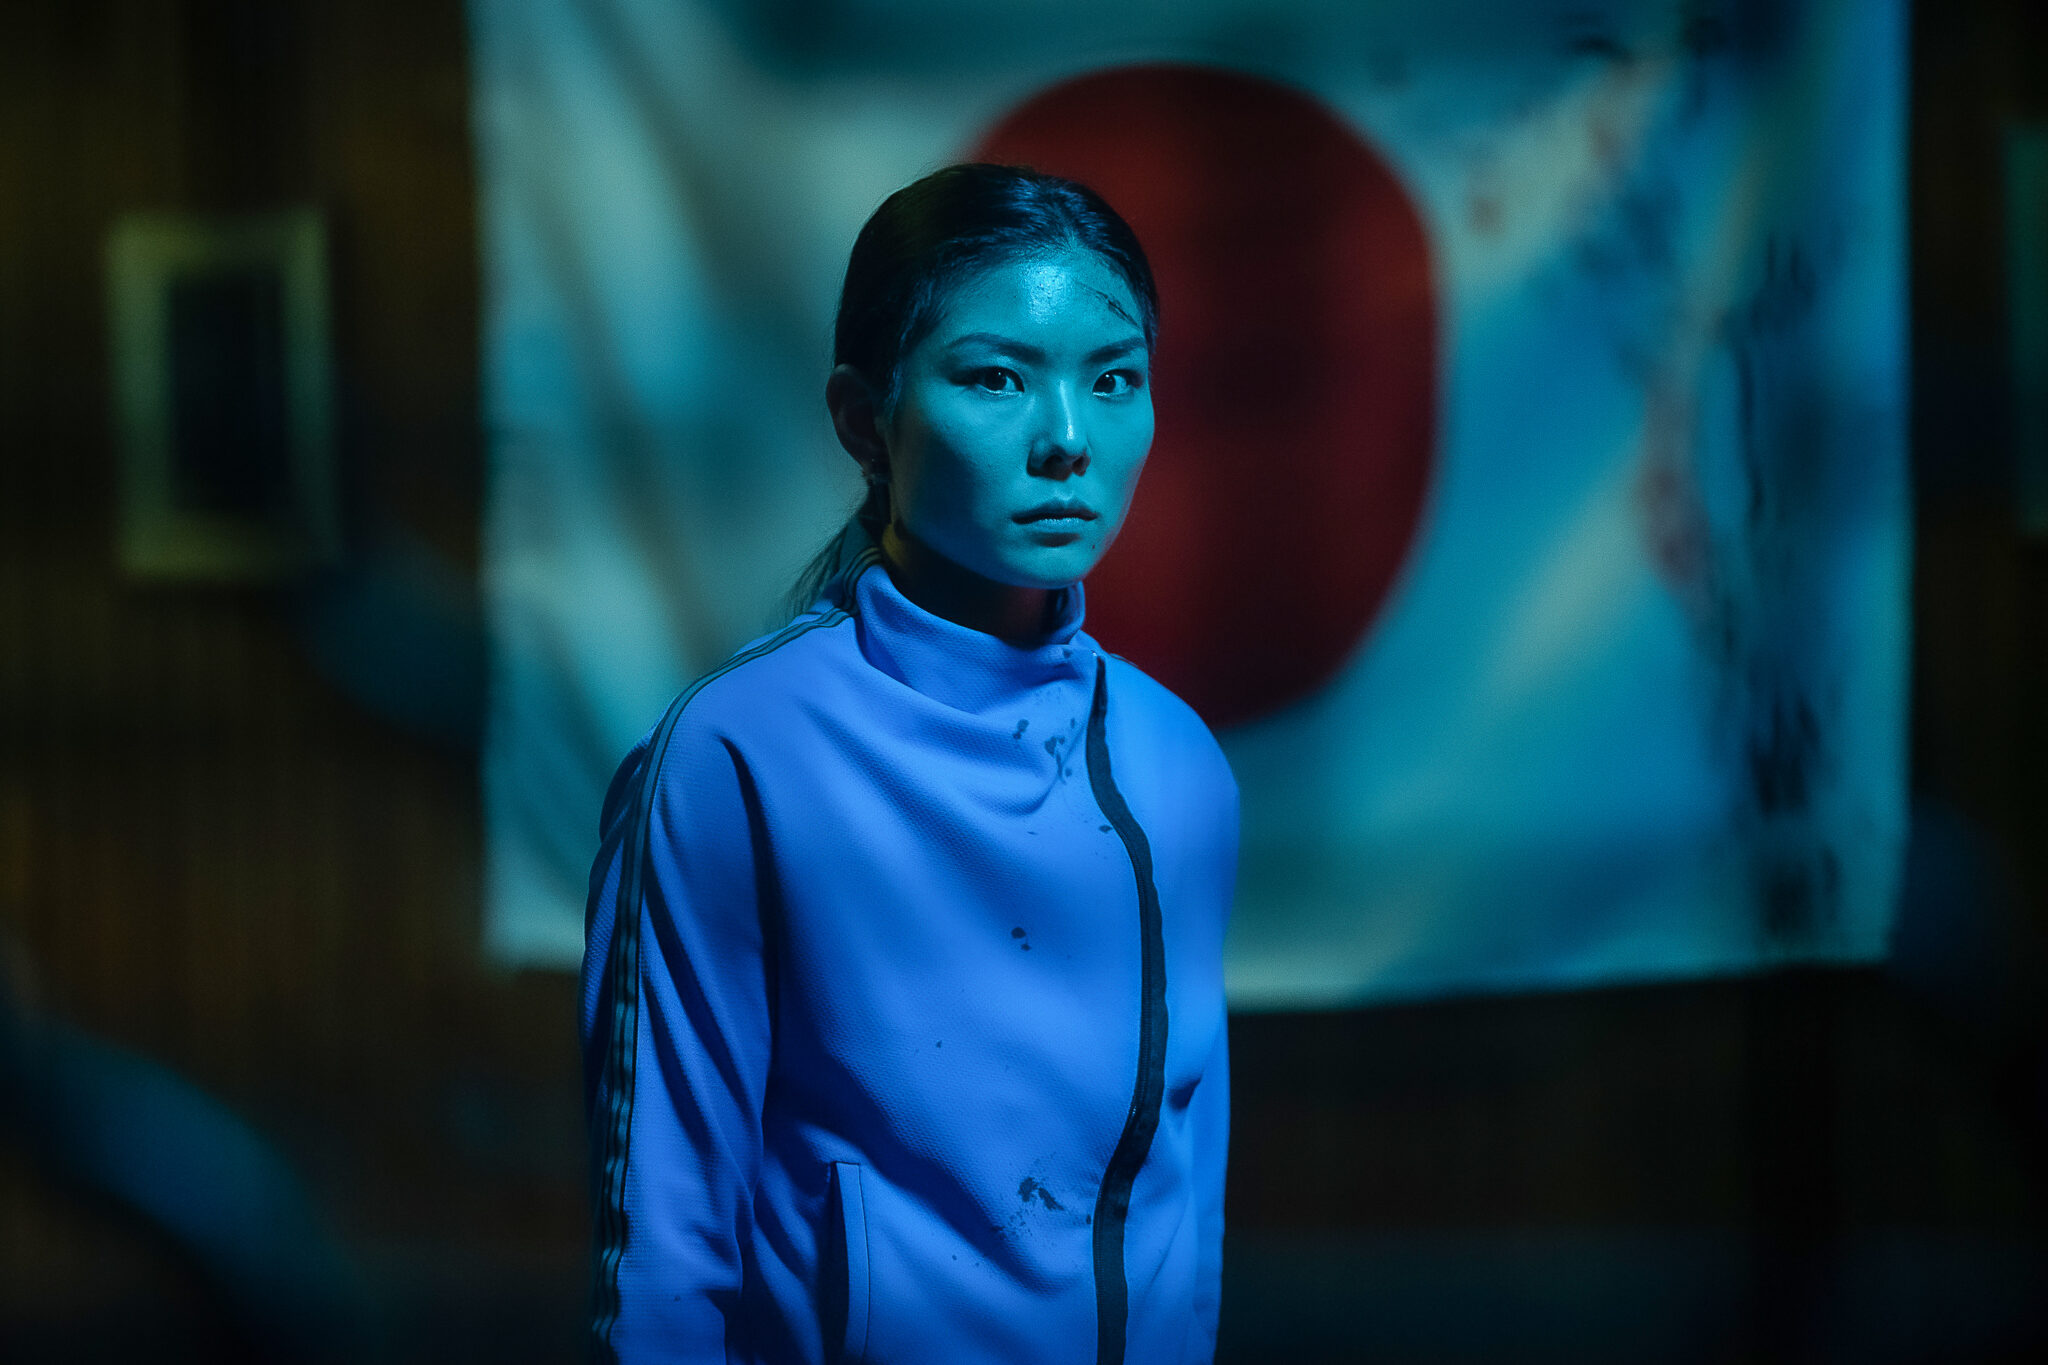 MASUMI im kalten Neonlicht. Im Hintergrund die japanische Flagge | Yakuza Princess